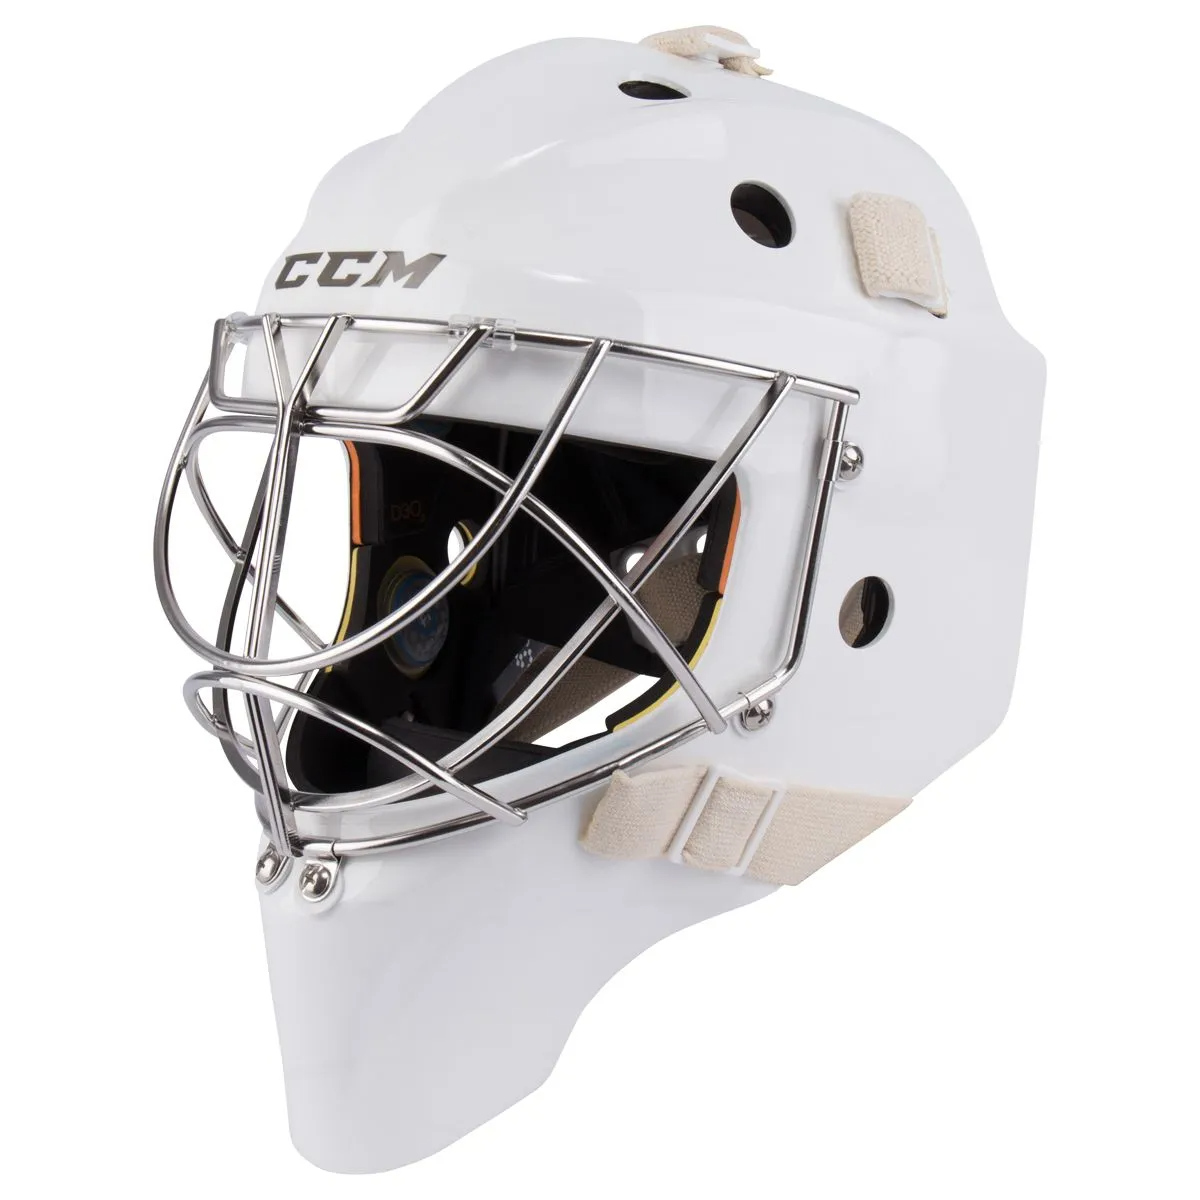 CCM Axis Pro Senior Non Certified Cat Eye Goalie Mask